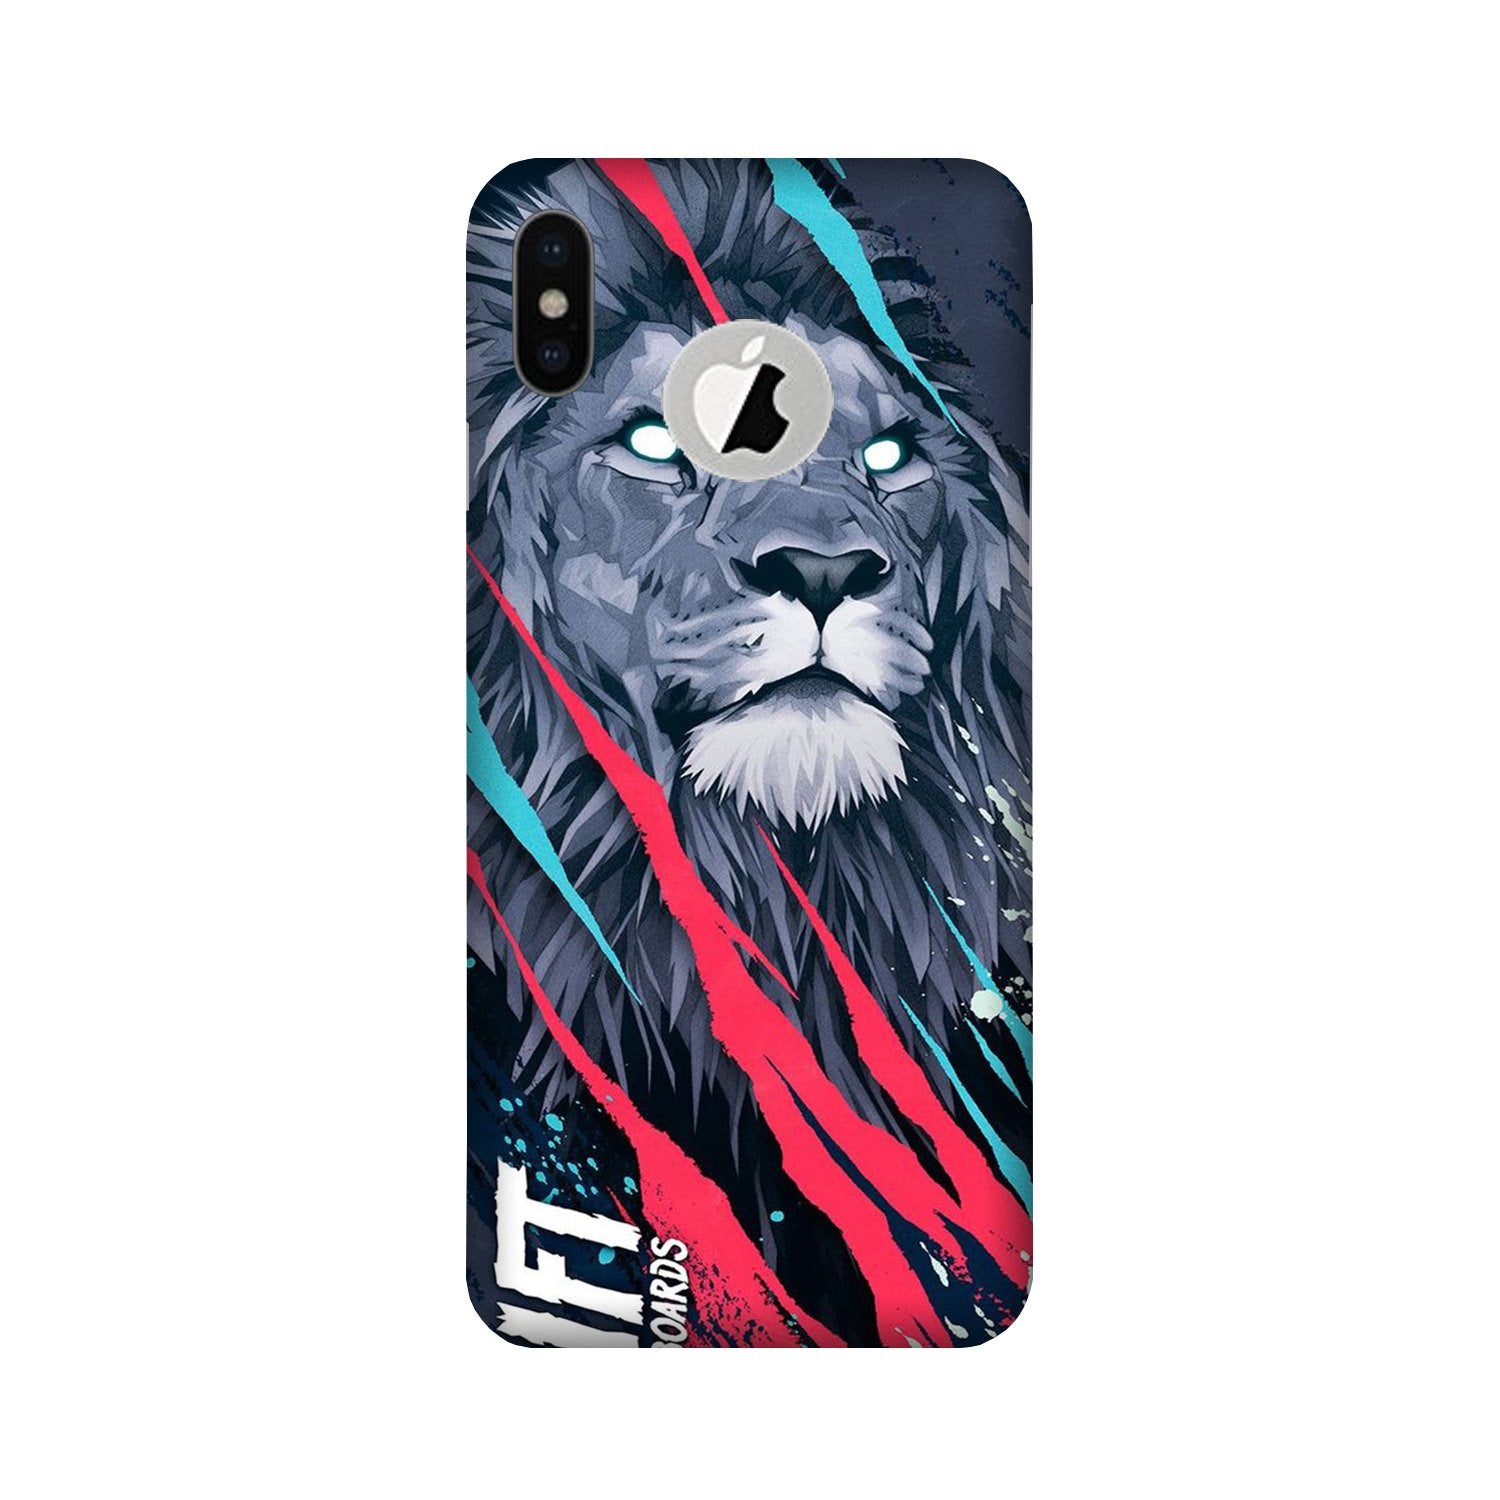 Lion Case for iPhone X logo cut (Design No. 278)